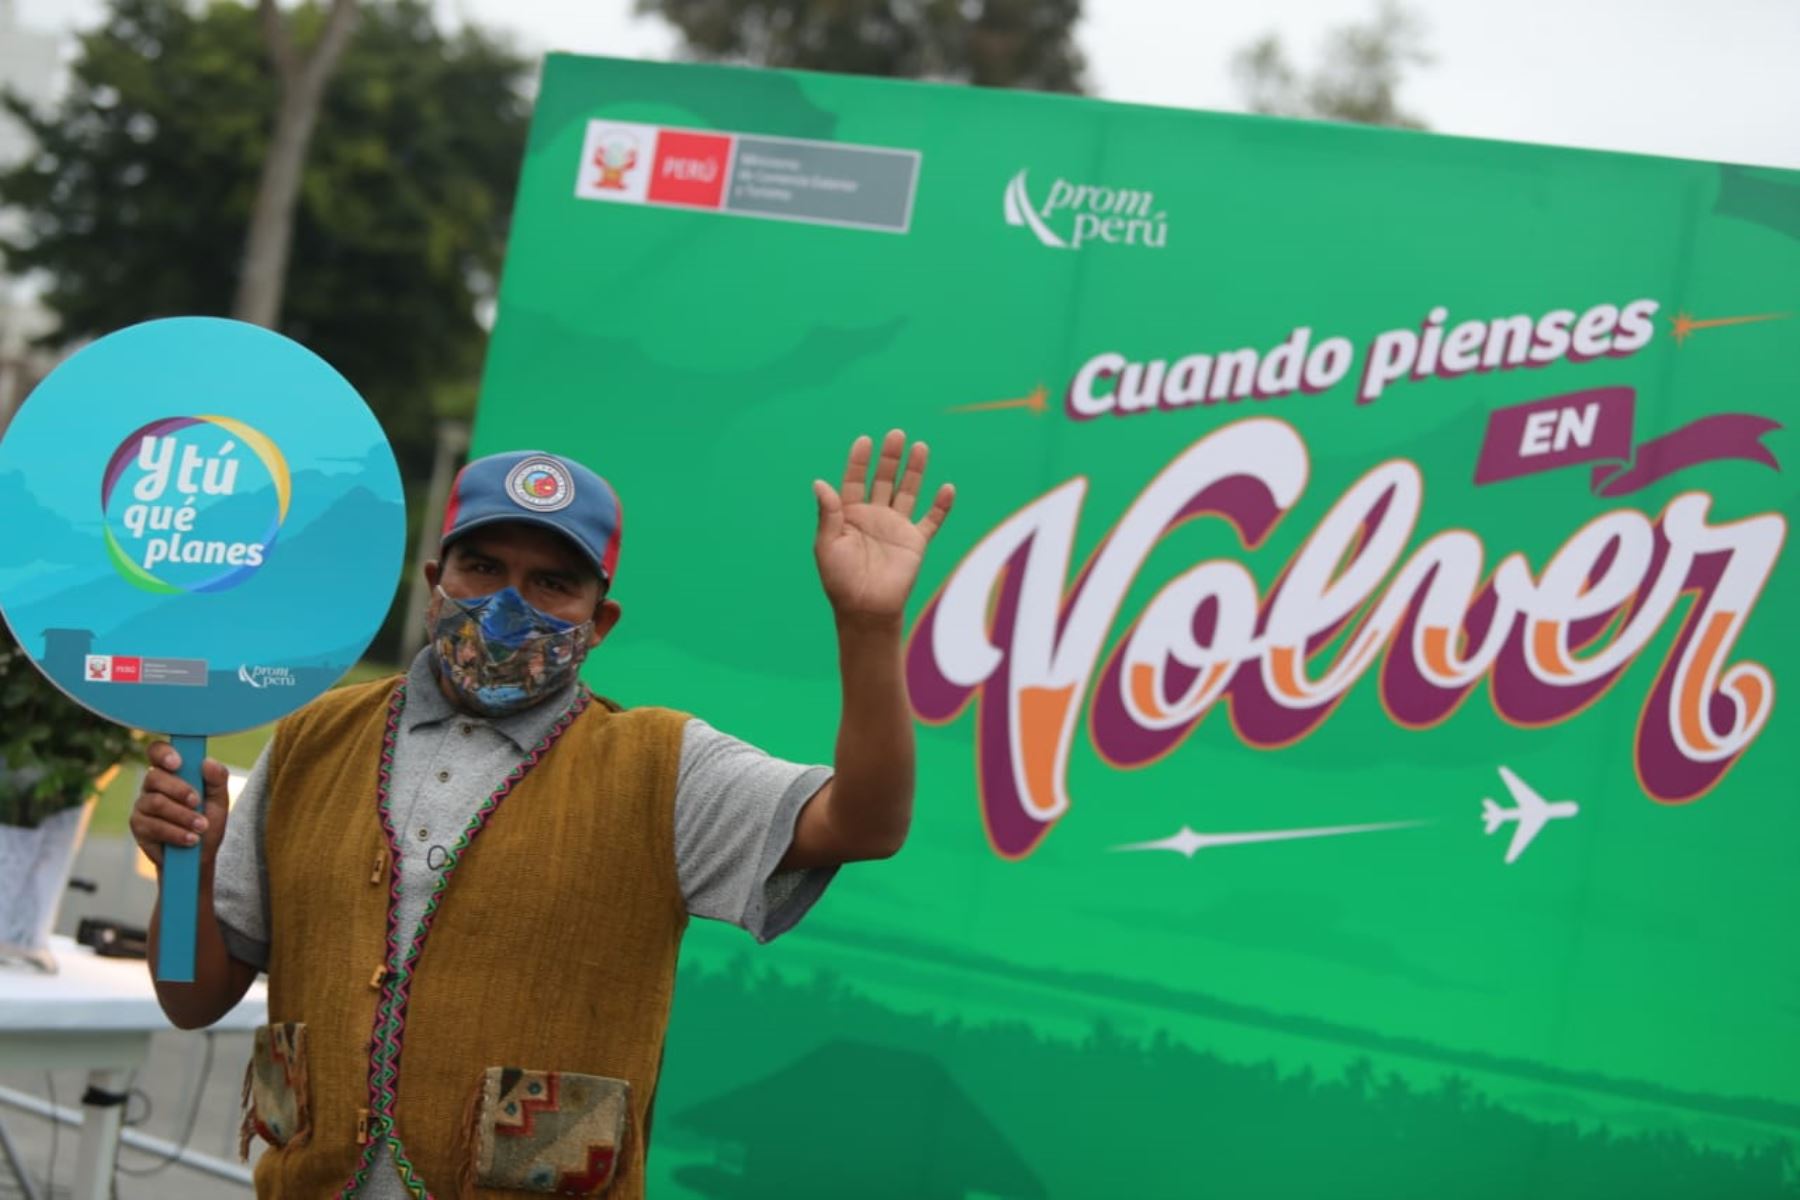 Los gobernadores regionales de Amazonas, Cajamarca, Cusco, Loreto, Puno, San Martín y Tumbes expresaron su pleno respaldo a la campaña “Volver” que impulsa el Gobierno para reactivar el turismo interno como parte de la reactivación económica del país. ANDINA/Prensa Presidencia